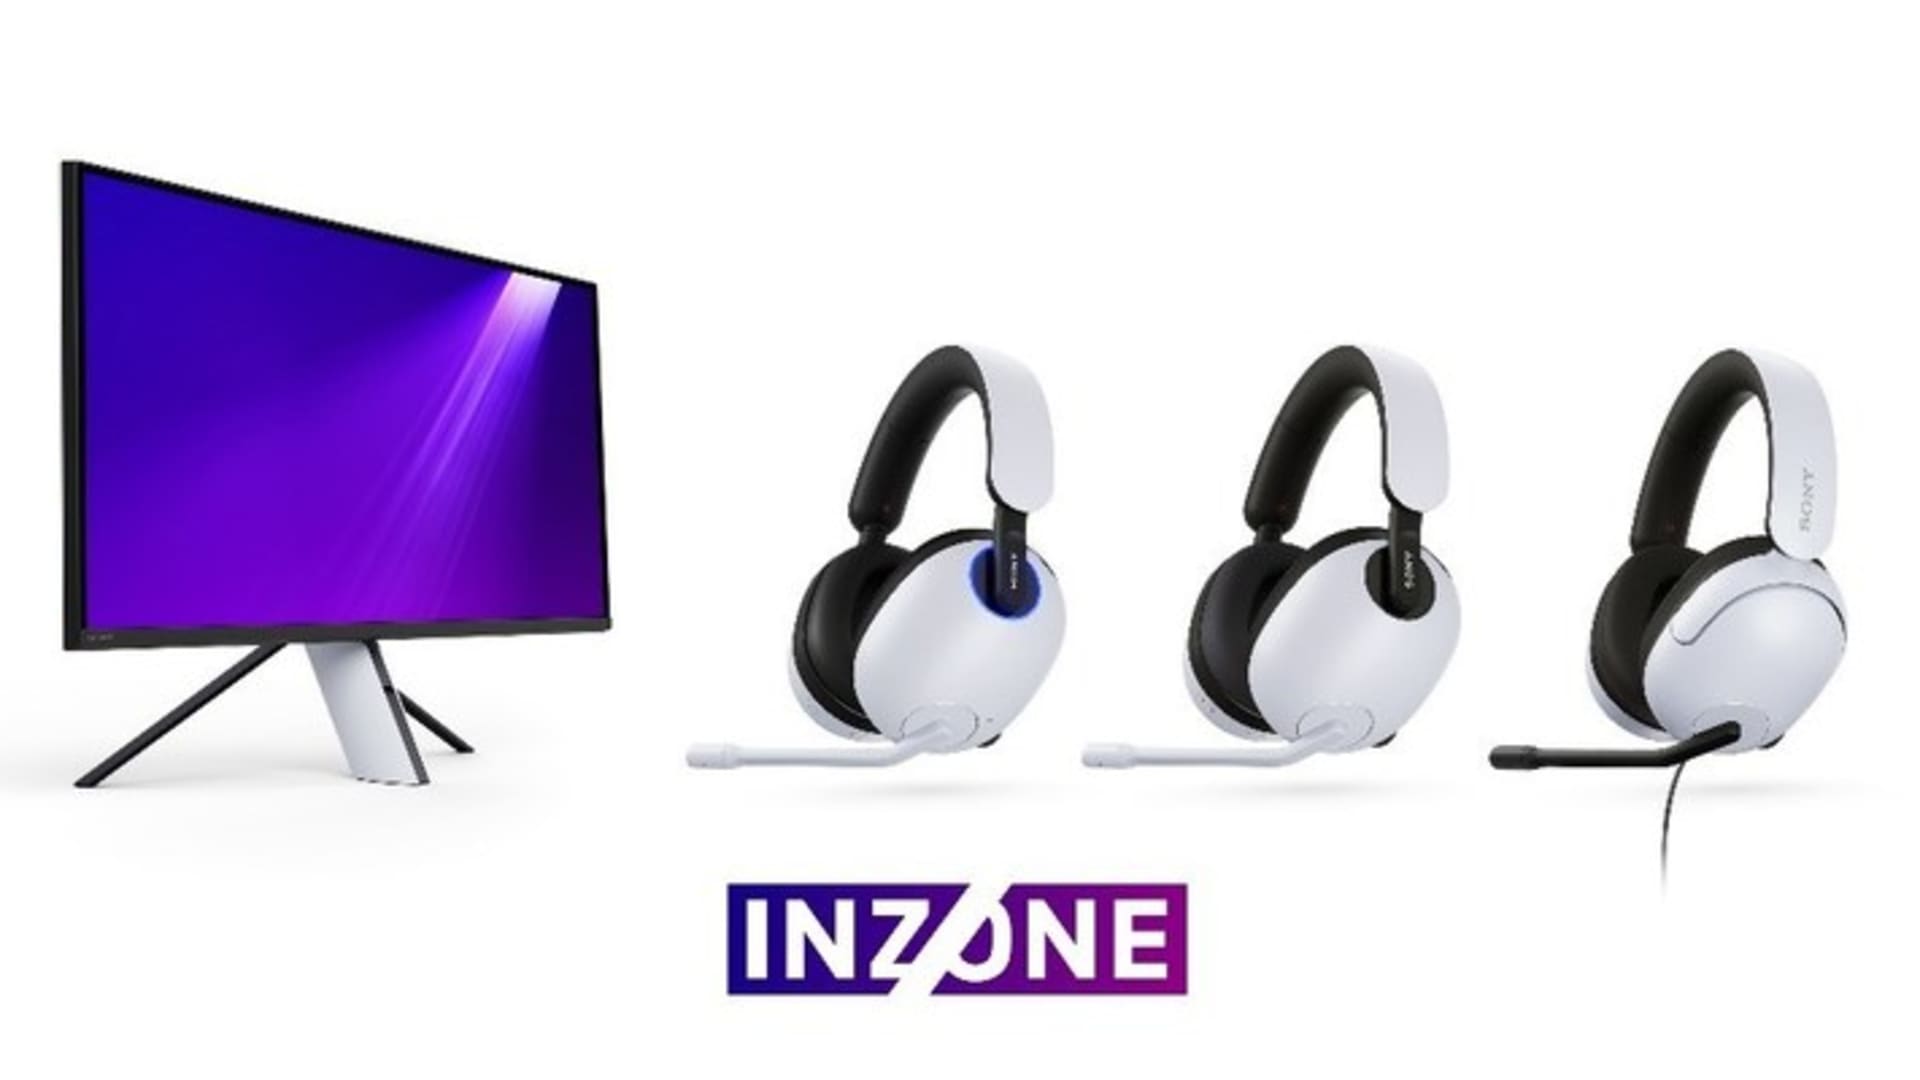 Sony memperkenalkan perlengkapan gaming PC Inzone yang terlihat di luar PS5